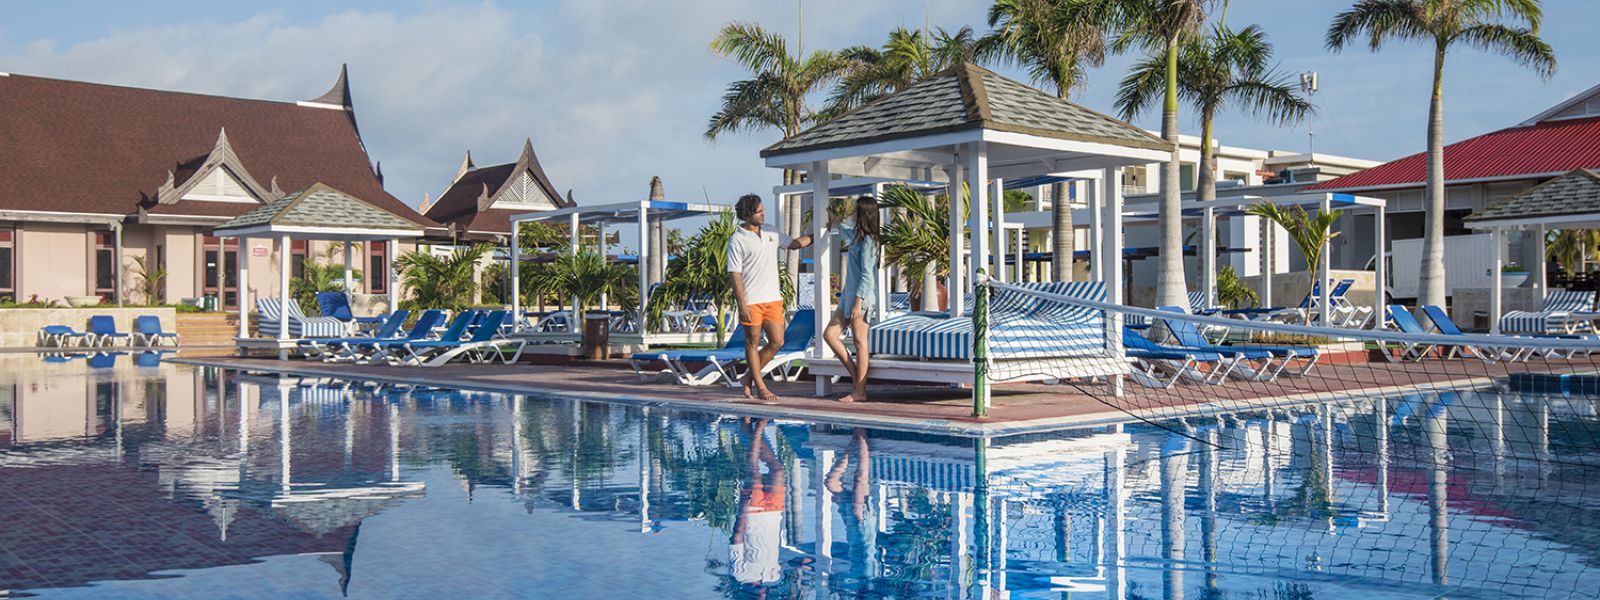 Services and Facilities | Hotel Playa Cayo Santa Maria